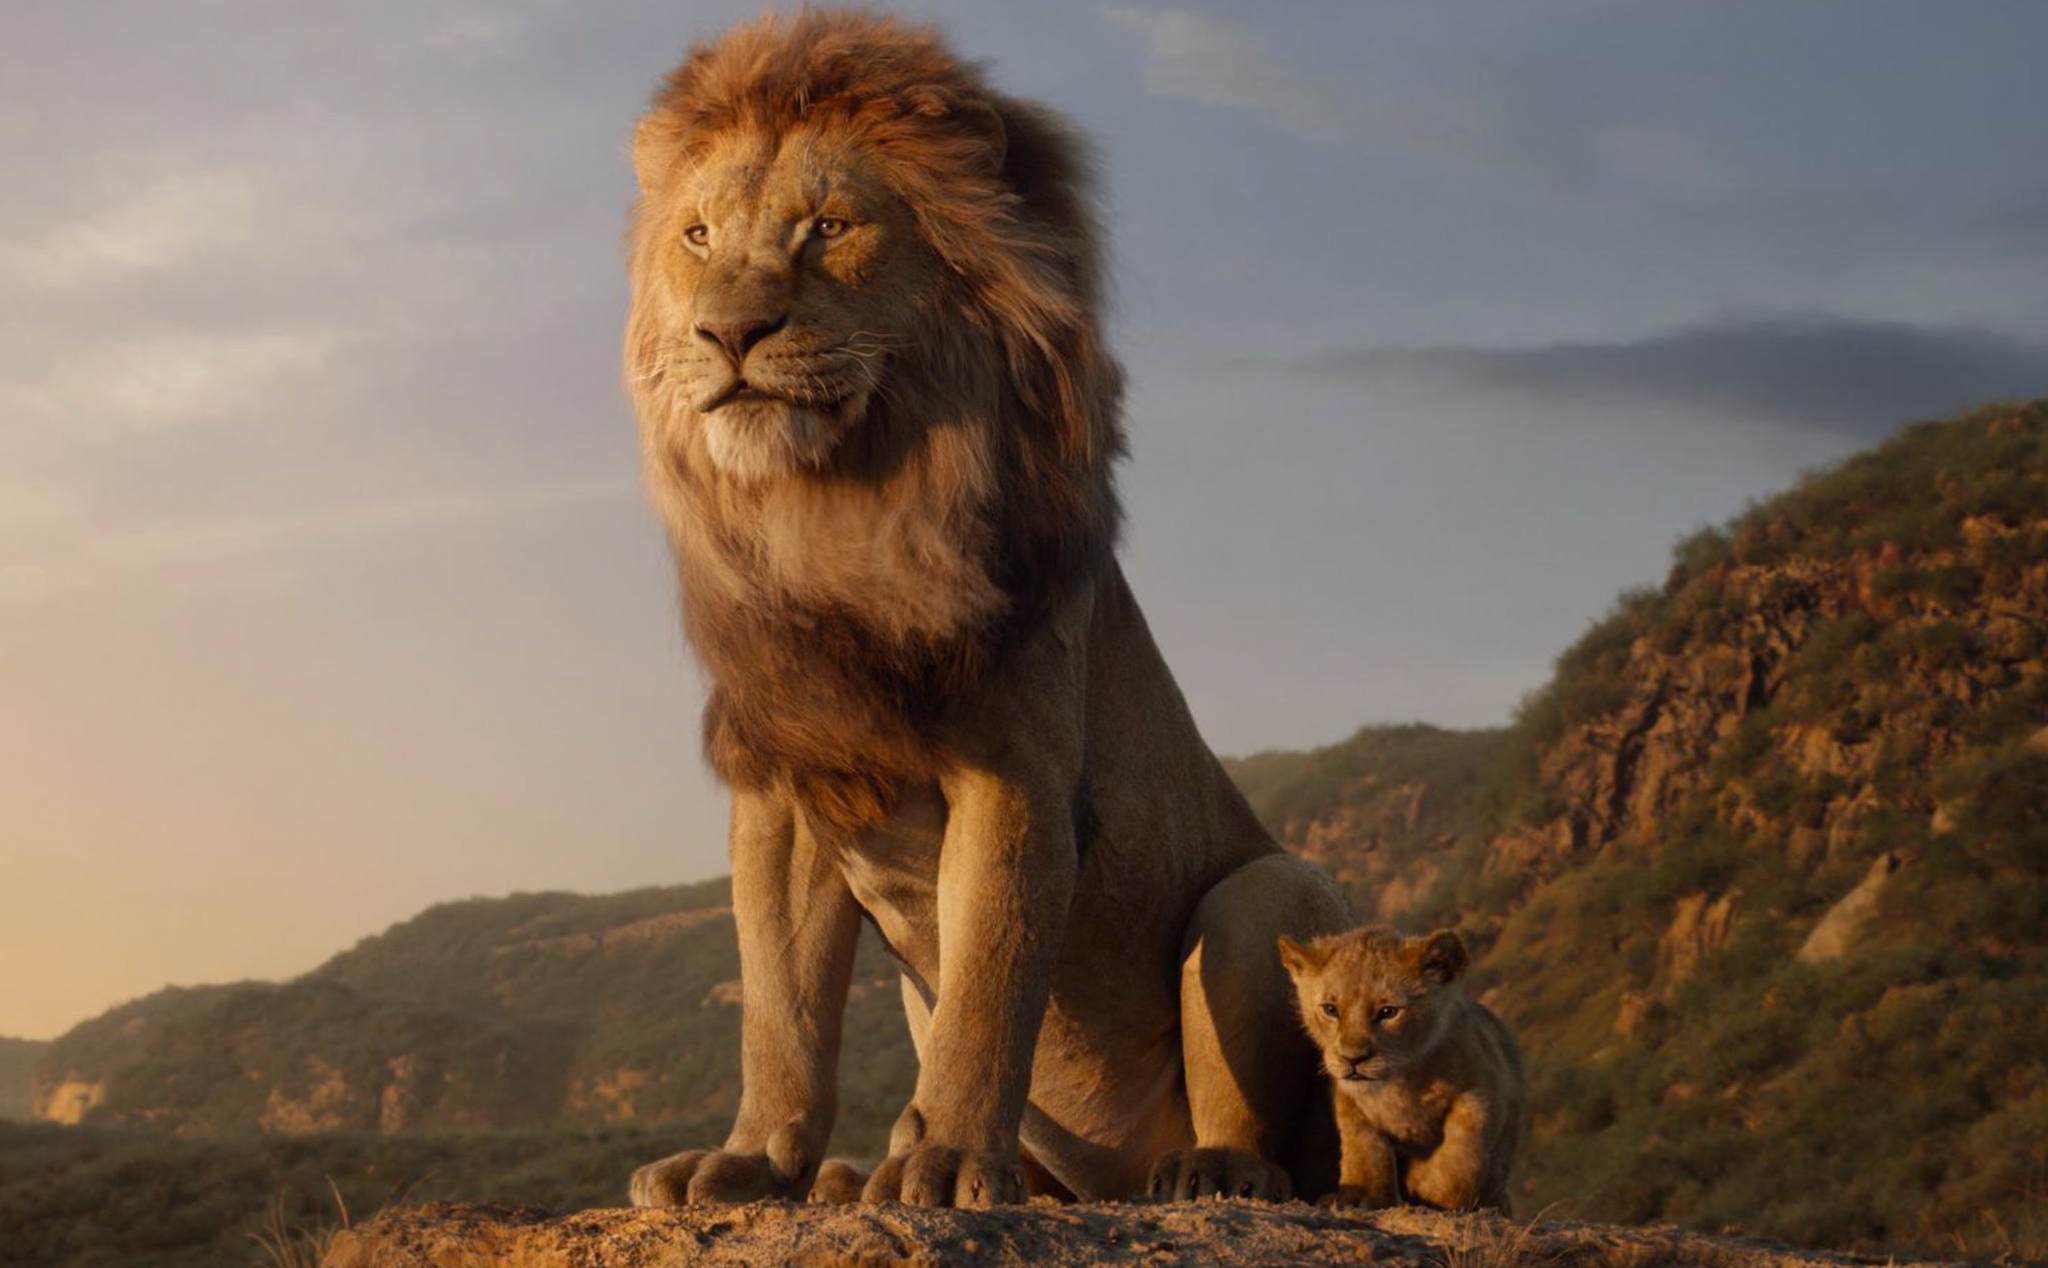 Tổng hợp phim đang và sắp chiếu rạp: Lion King, Step Up mới, The Current War,...